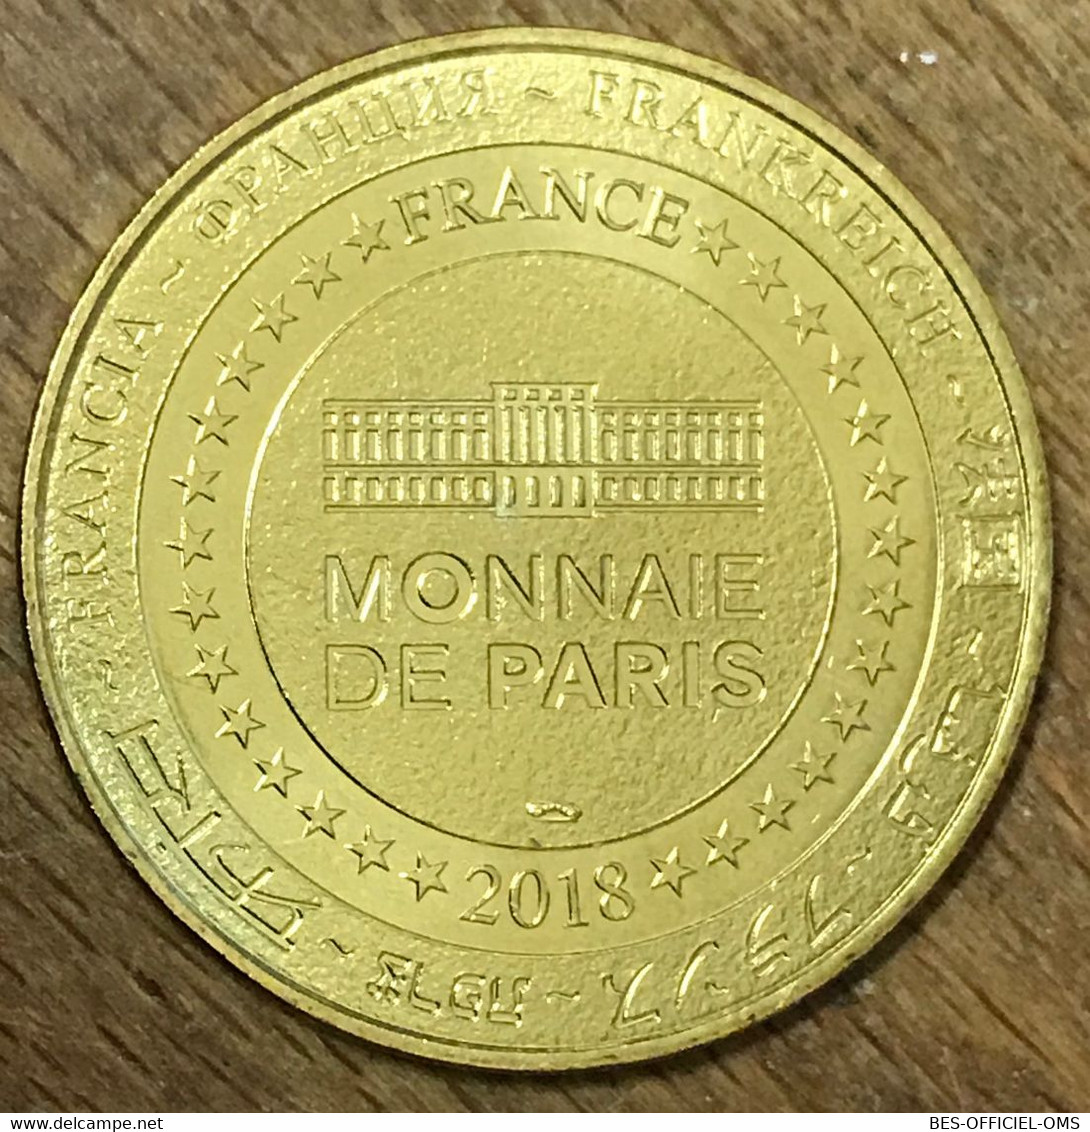 86 FUTUROSCOPE AÉROBAR MDP 2018 MÉDAILLE SOUVENIR MONNAIE DE PARIS JETON TOURISTIQUE MEDALS COINS TOKENS - 2018